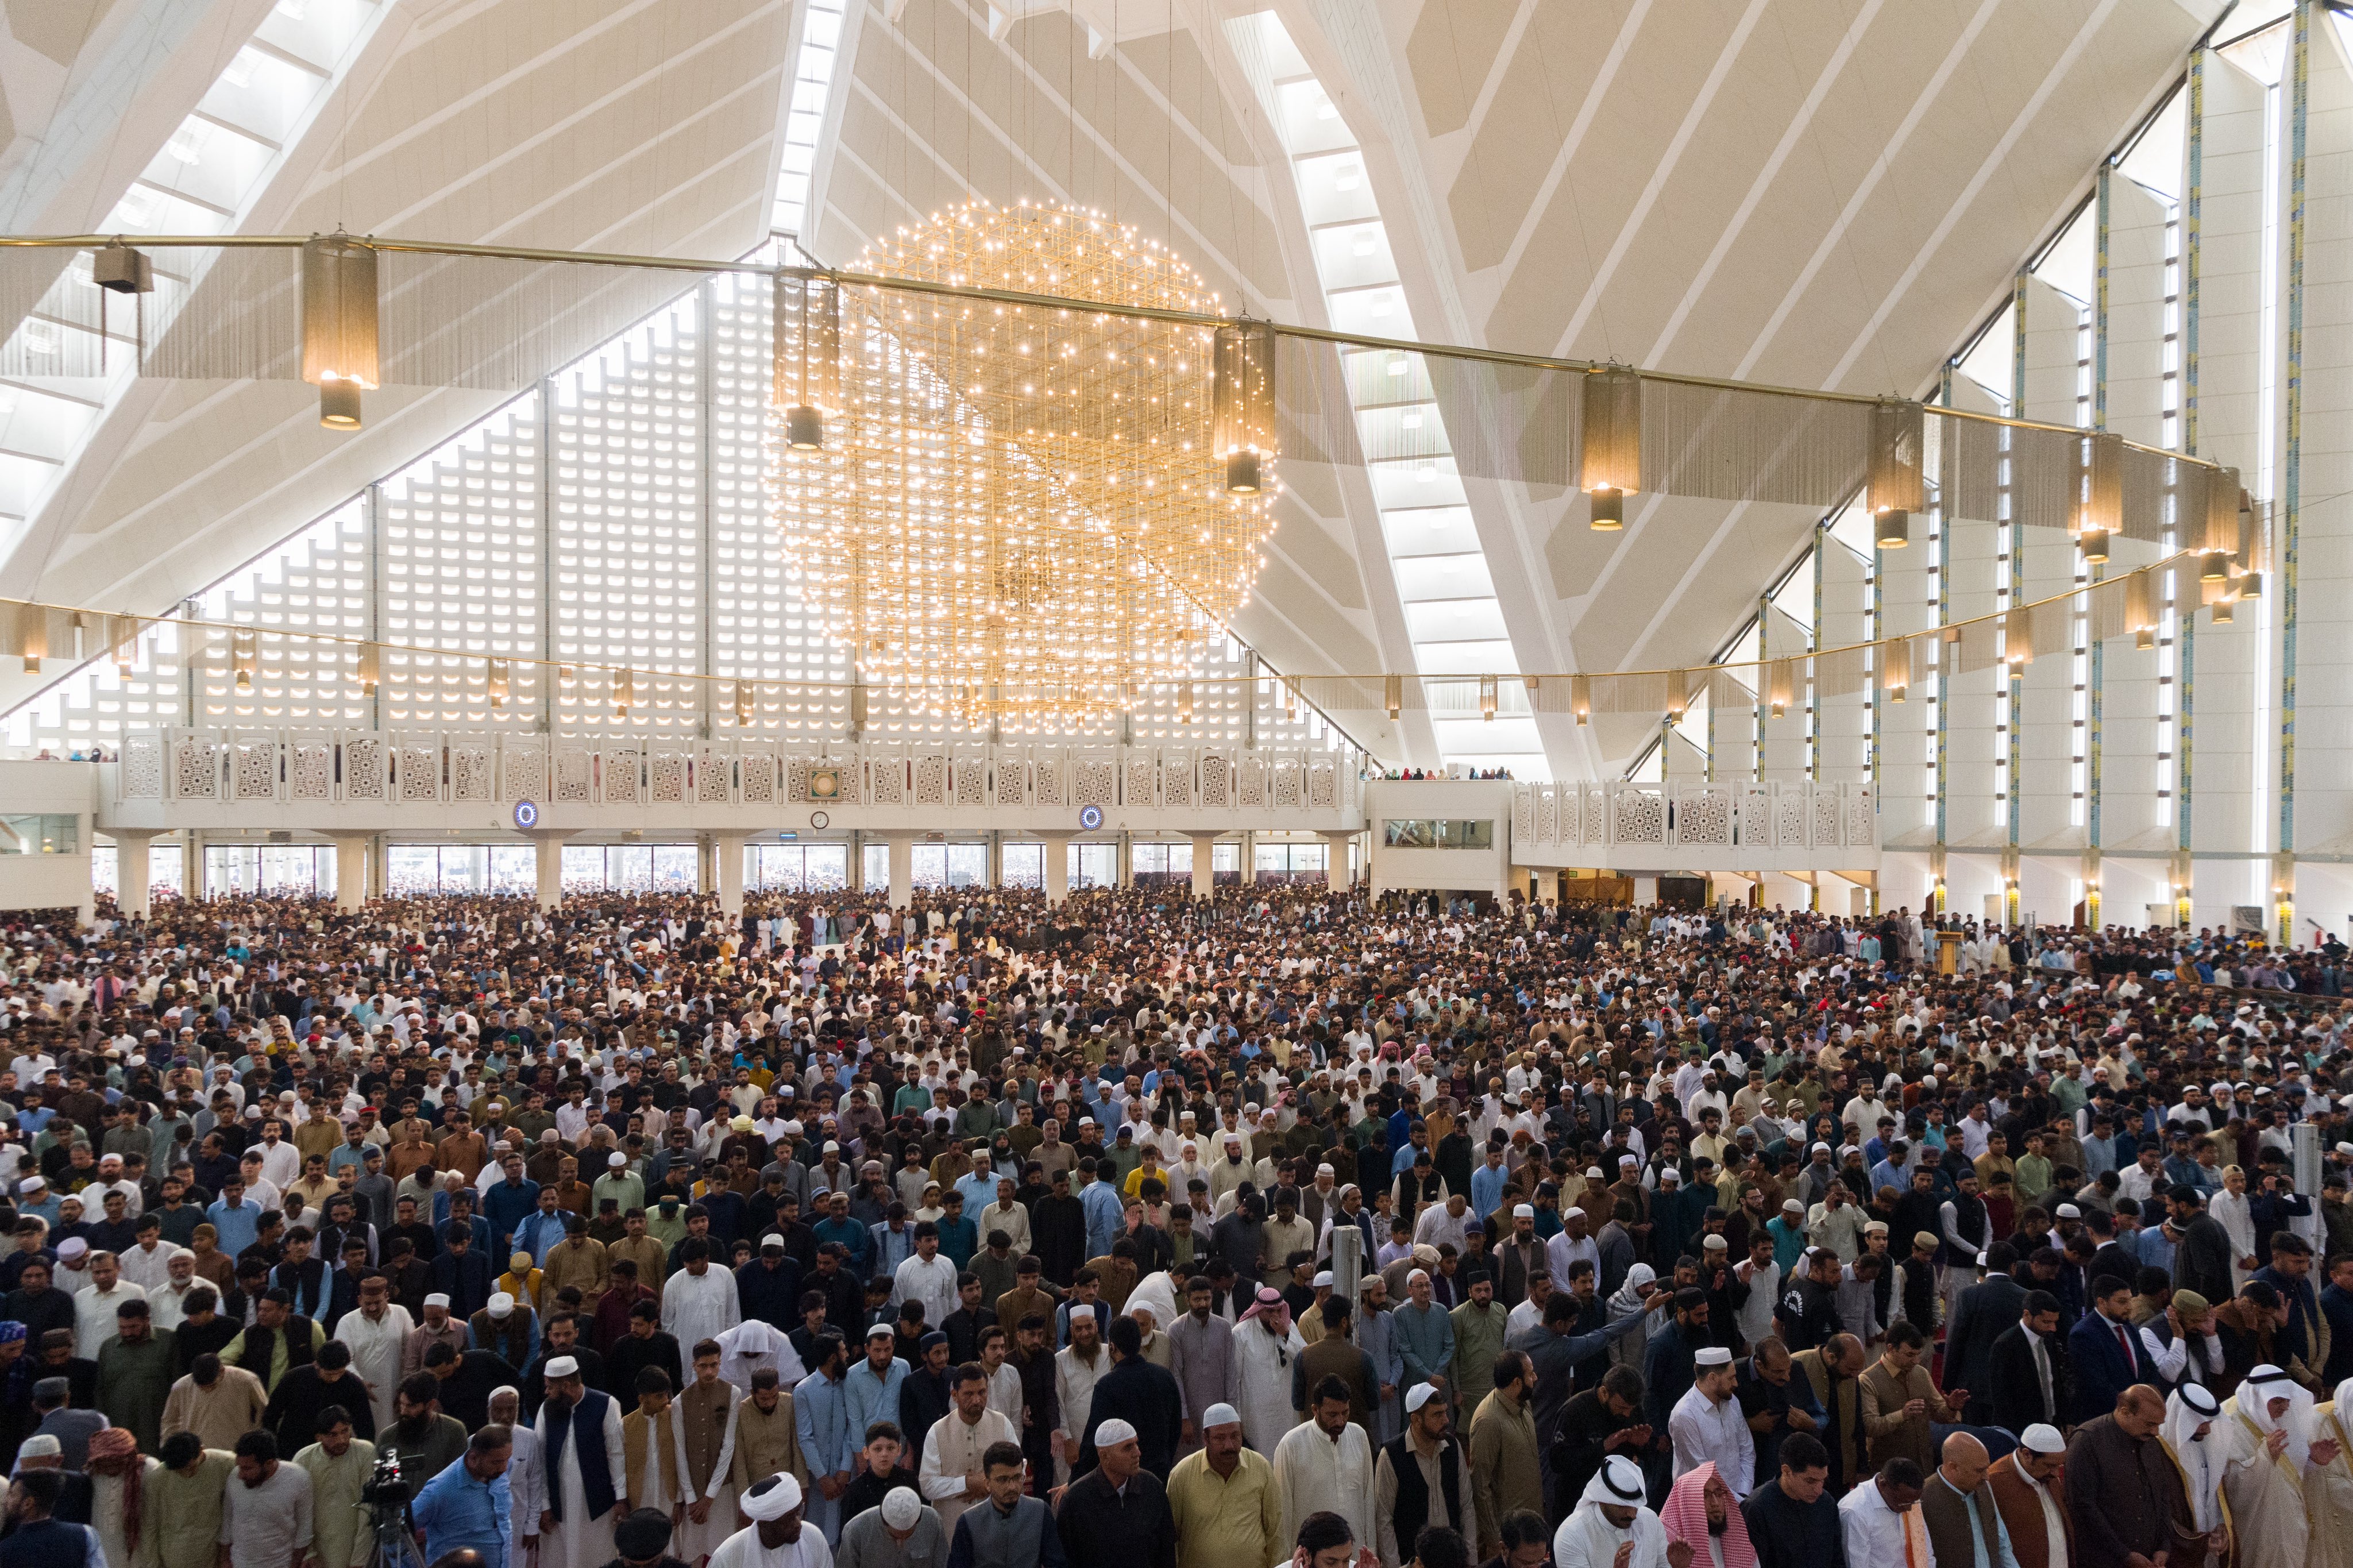 Yang Mulia Syekh Dr. Mohammed Alissa, dari mimbar Masjid Raja Faisal di Pakistan, menegaskan bahwa: Setiap Muslim bangga dengan agamanya, tetapi kebanggaan yang sebenarnya dibuktikan dengan tindakan